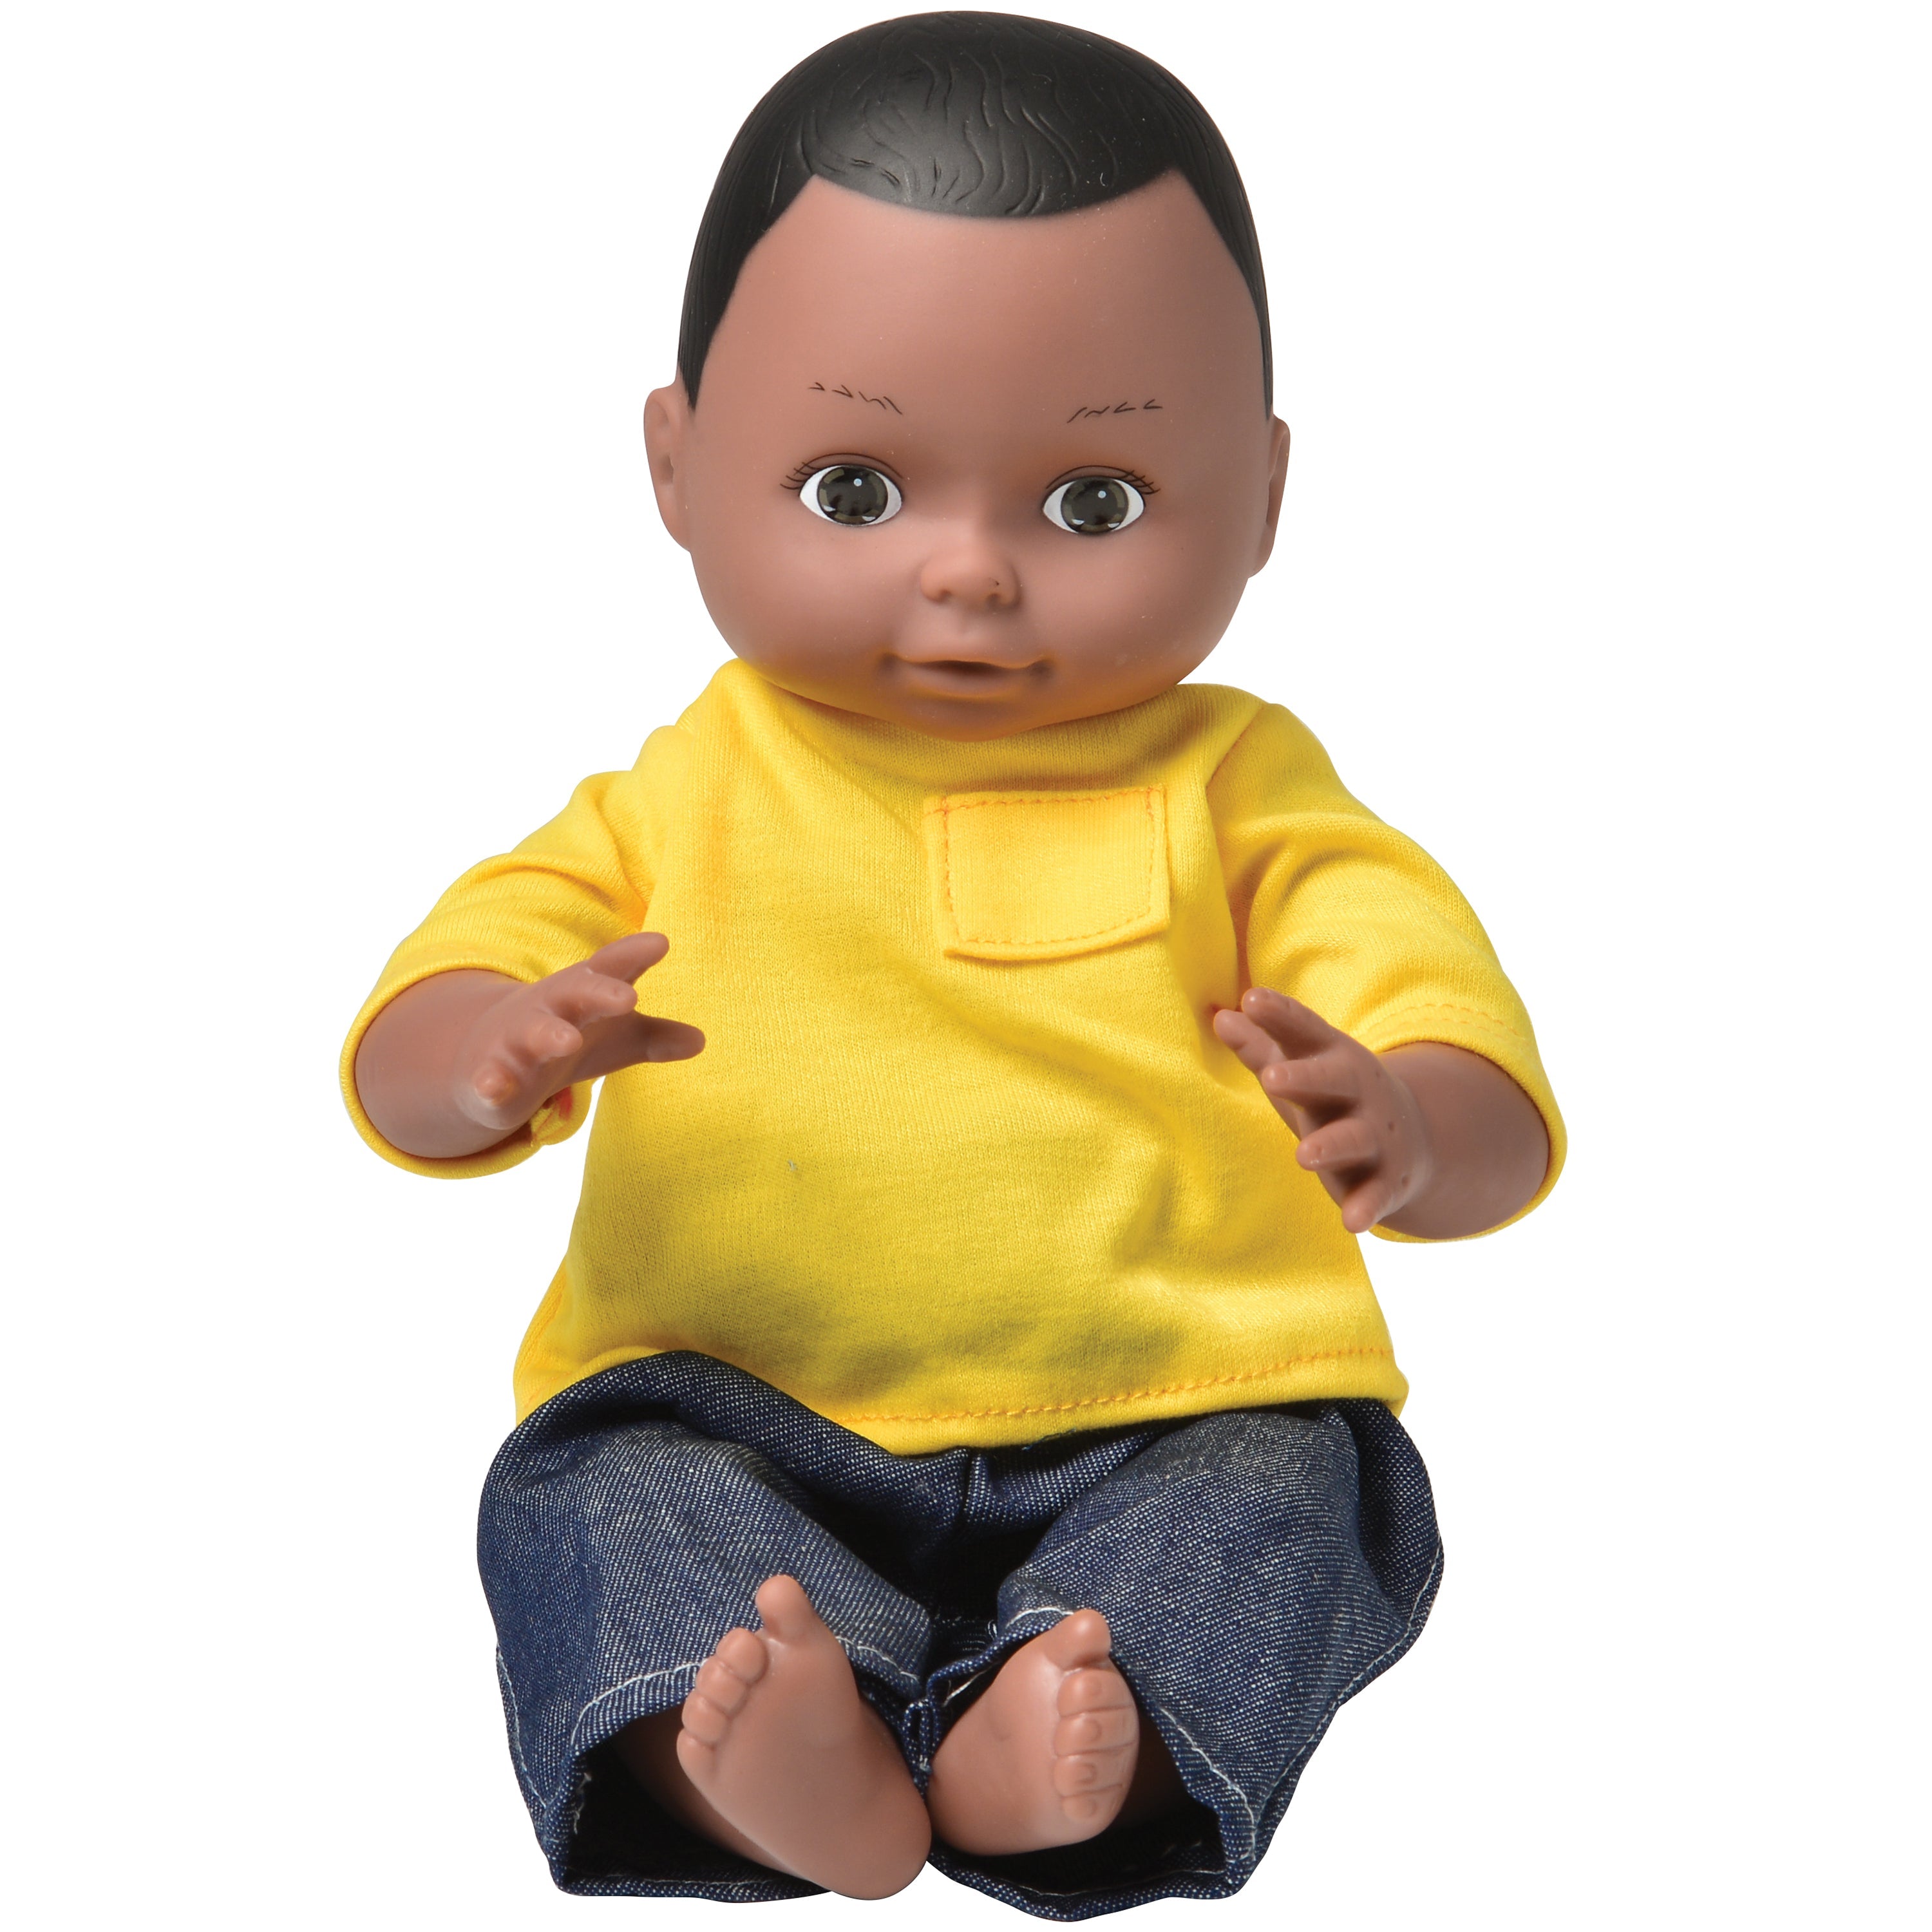 Ethnic Doll - African American Boy